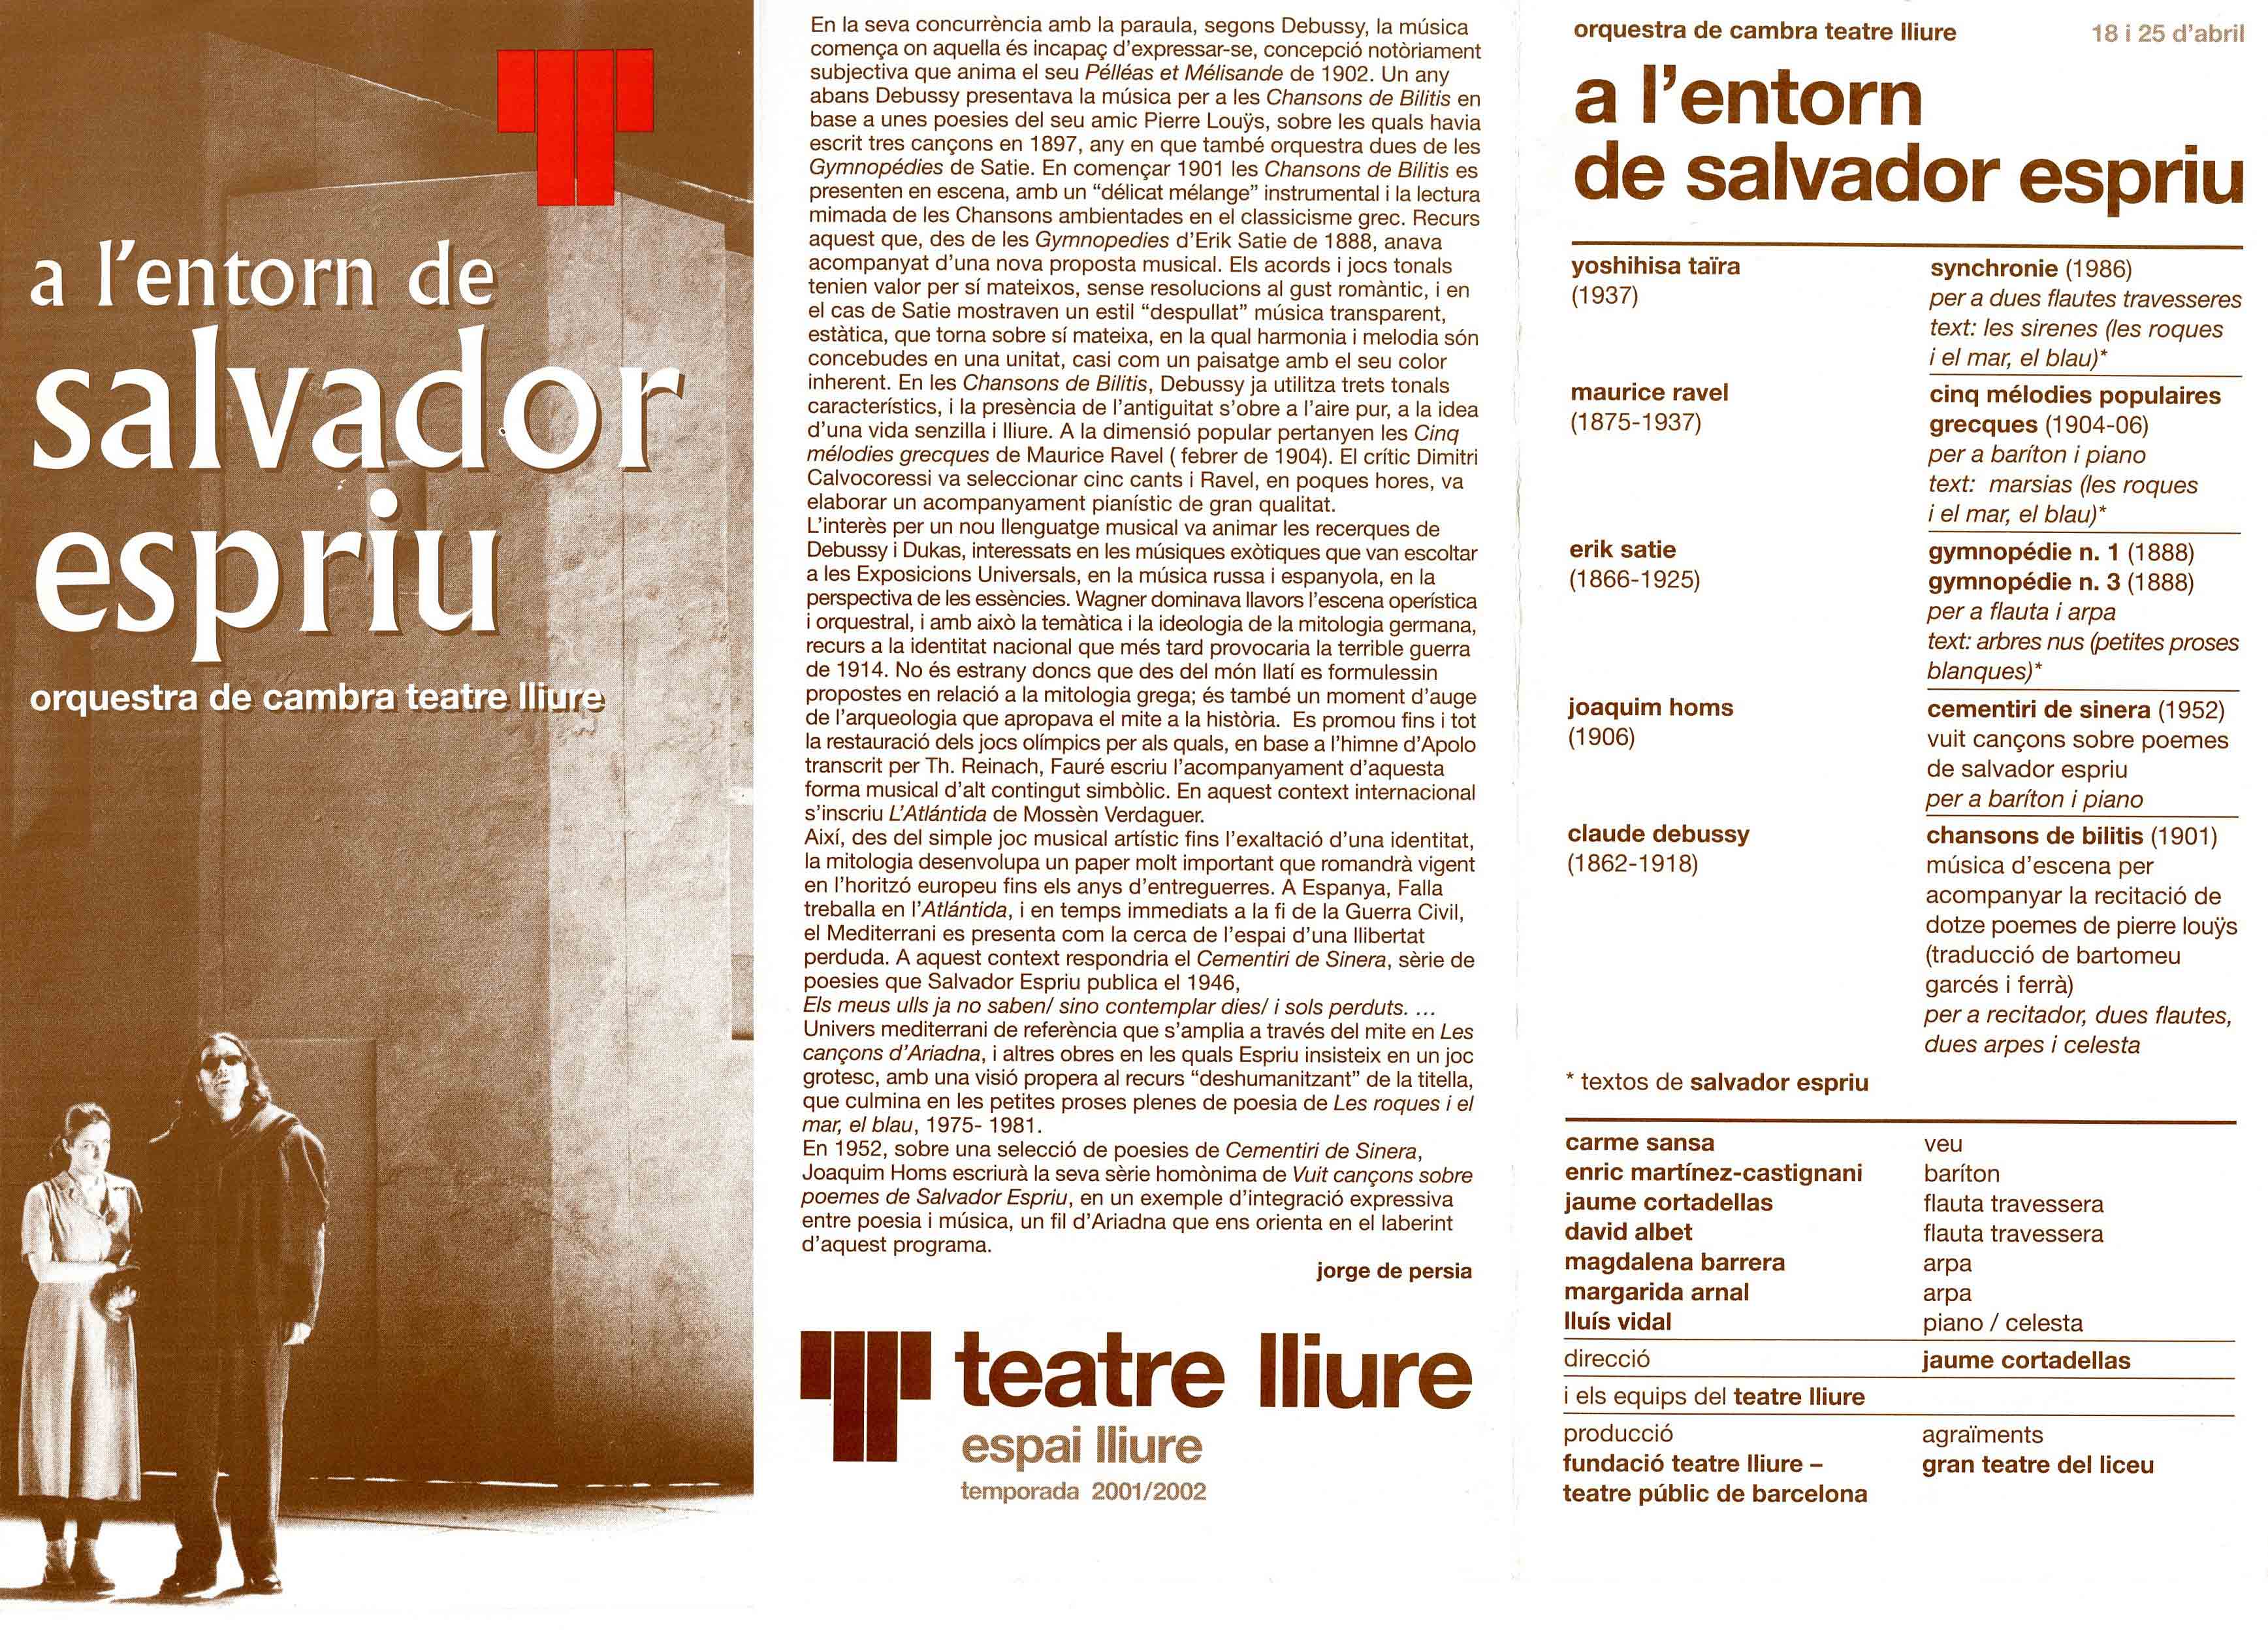 Programa de mà. A l'entorn de Salvador Esrpriu. Teatre Lliure. 2002